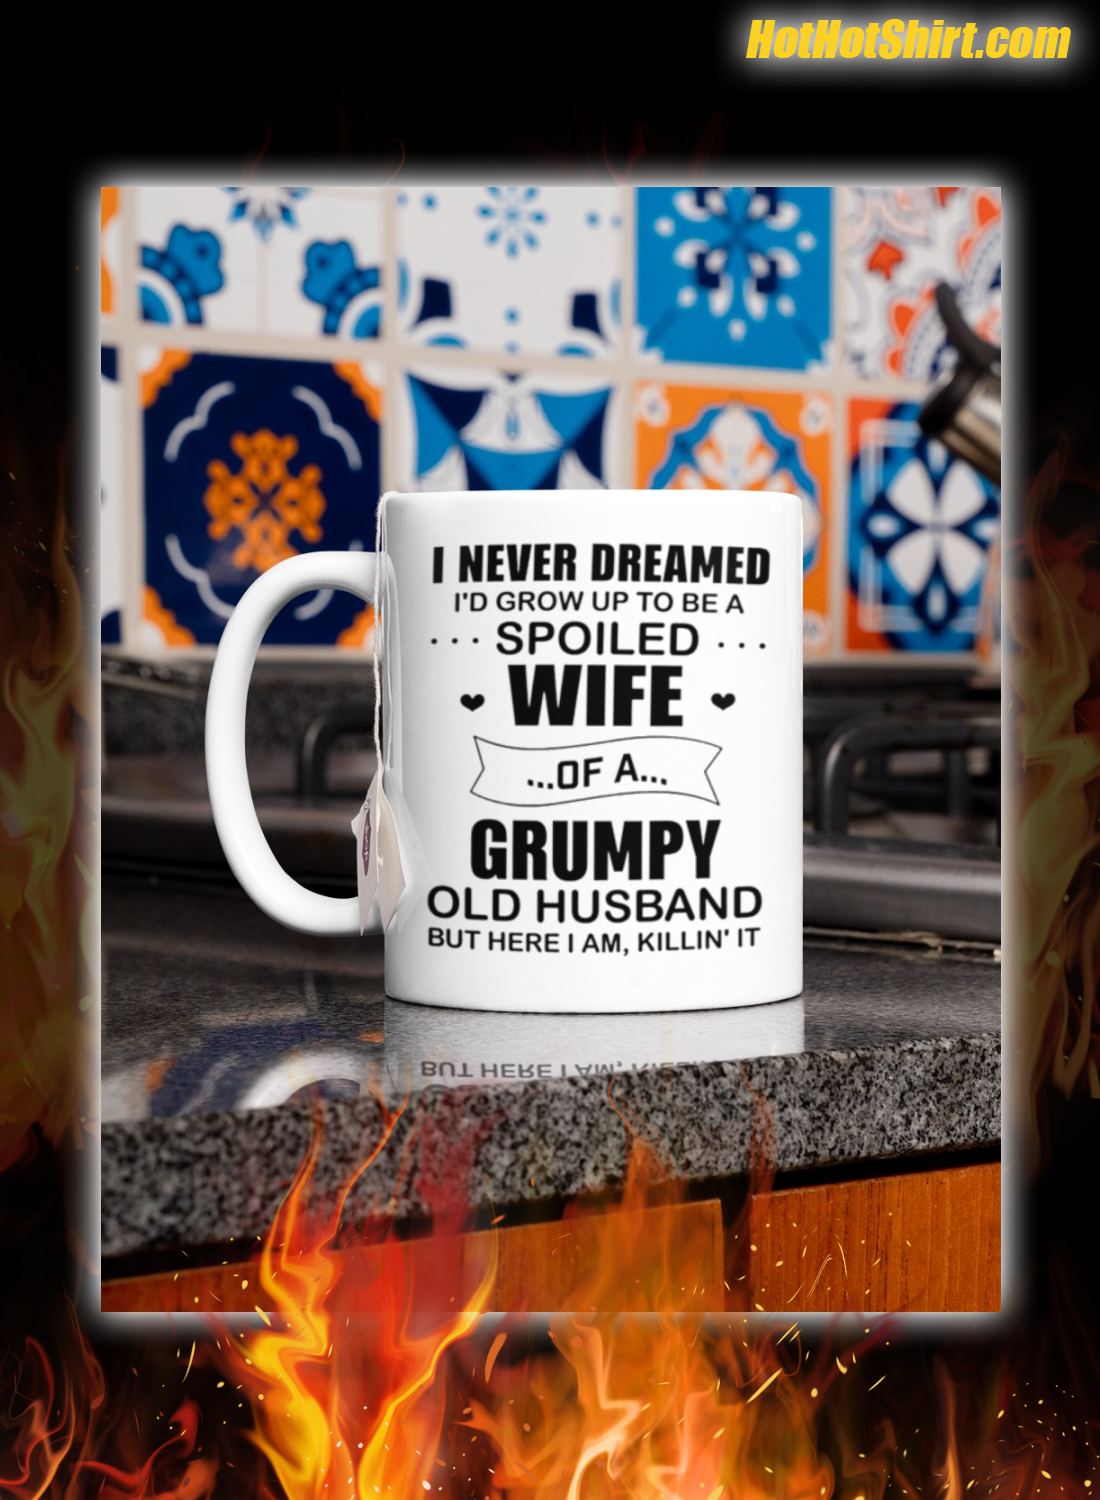 Grumpy old husband I never dreamed i'd grow up to be a spoiled wife mug